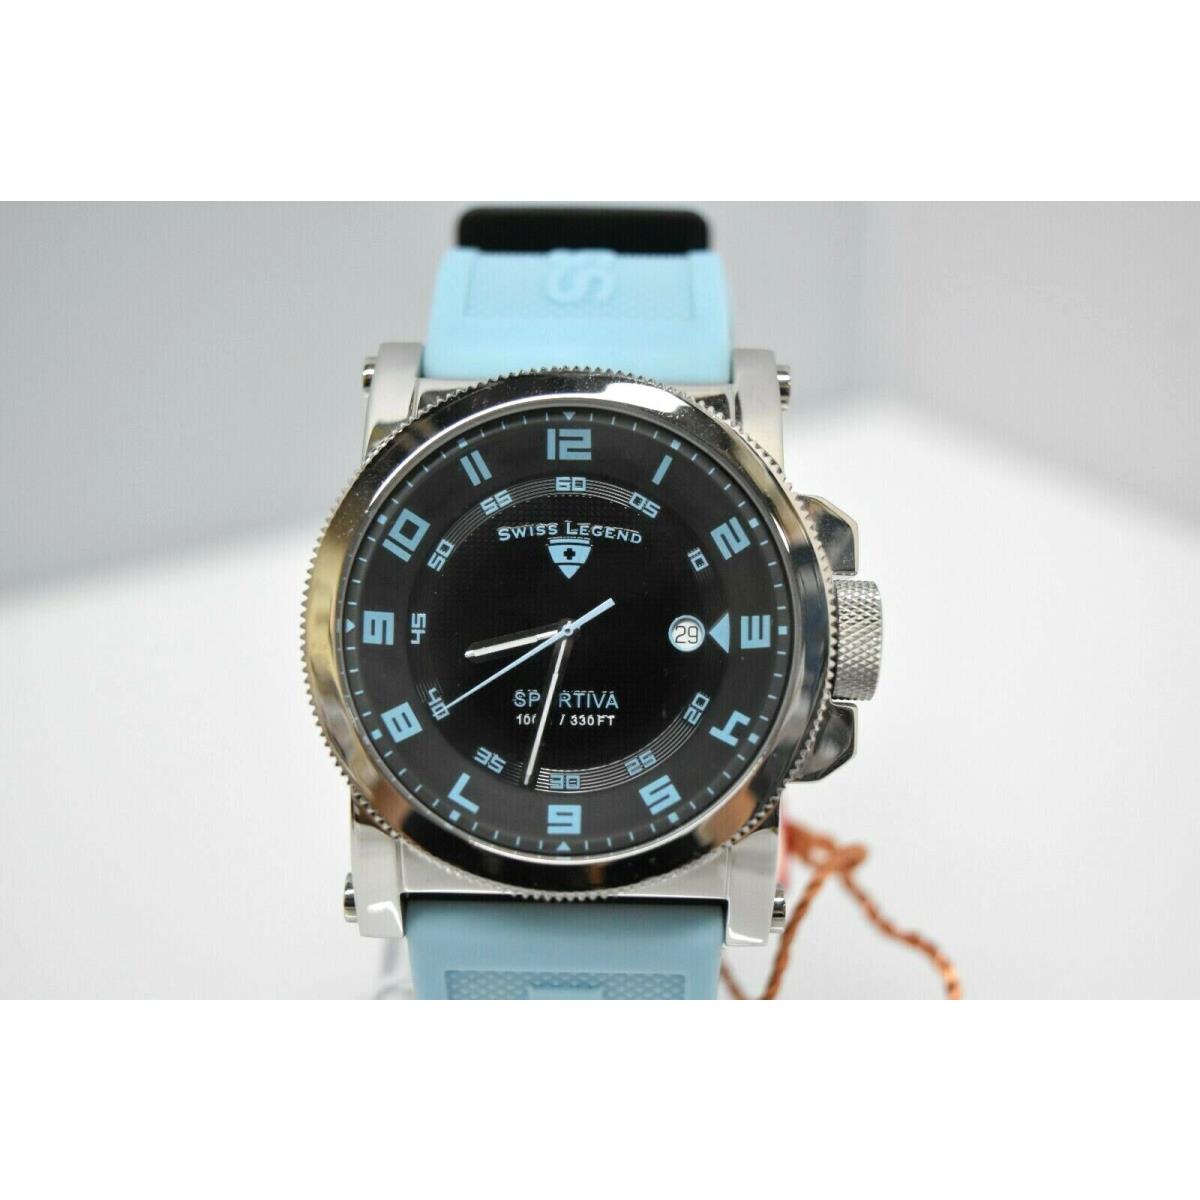 Swiss Legend Sportiva 45mm SL-40030 Watch Baby Blue/Black